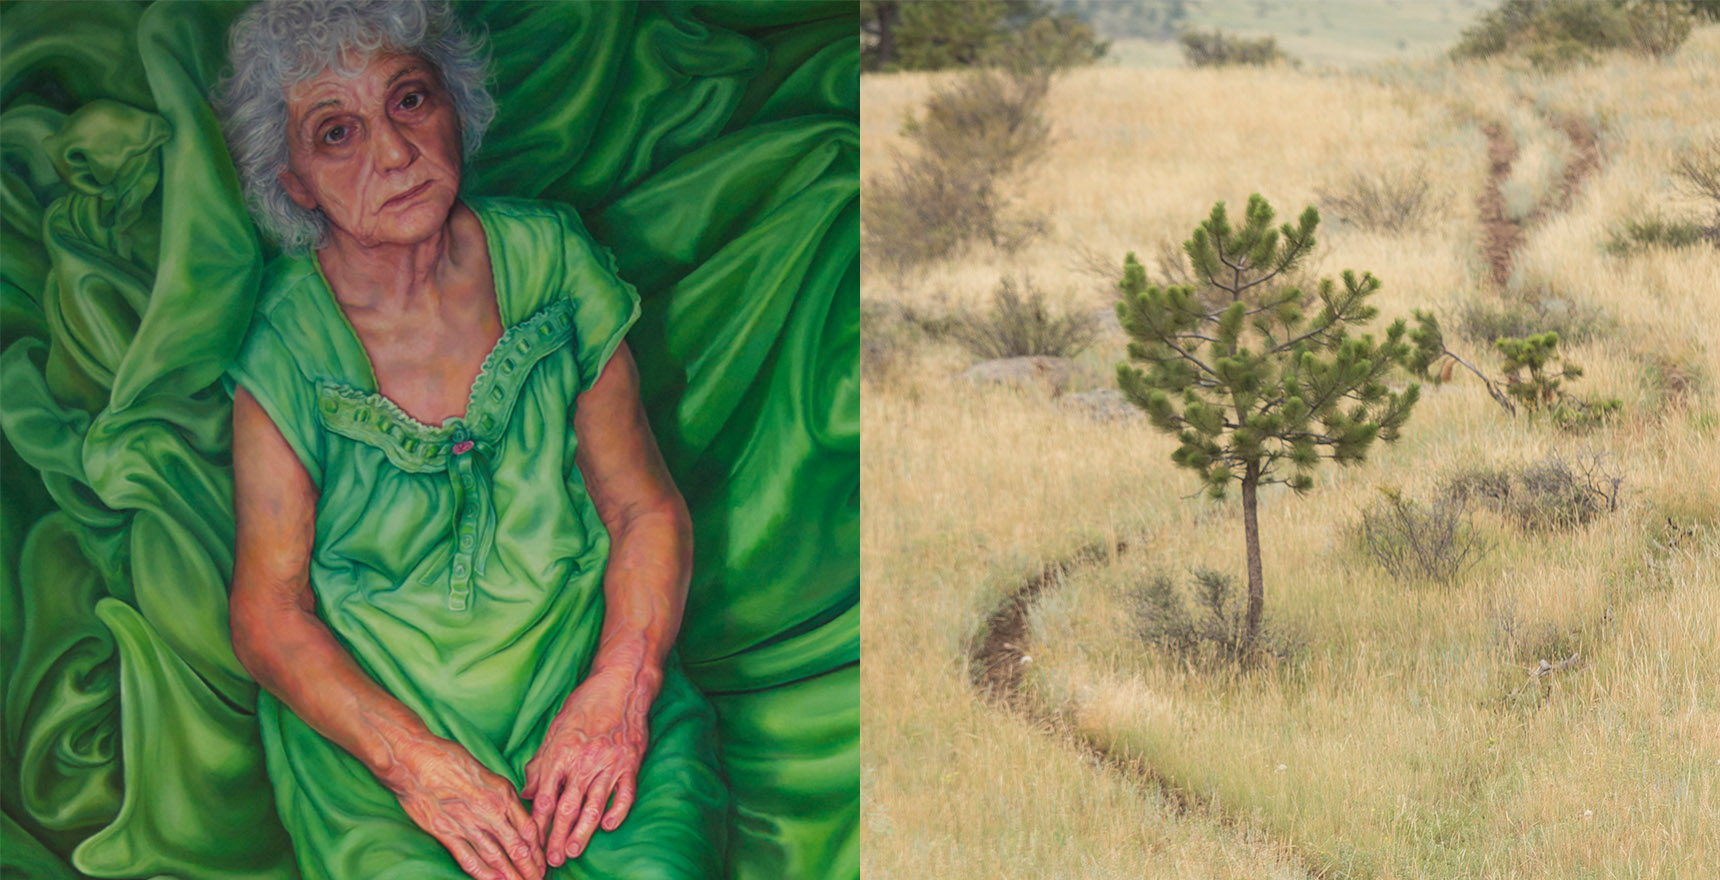 elderly woman in green on green sheet opposite lone pine tree in grassy field